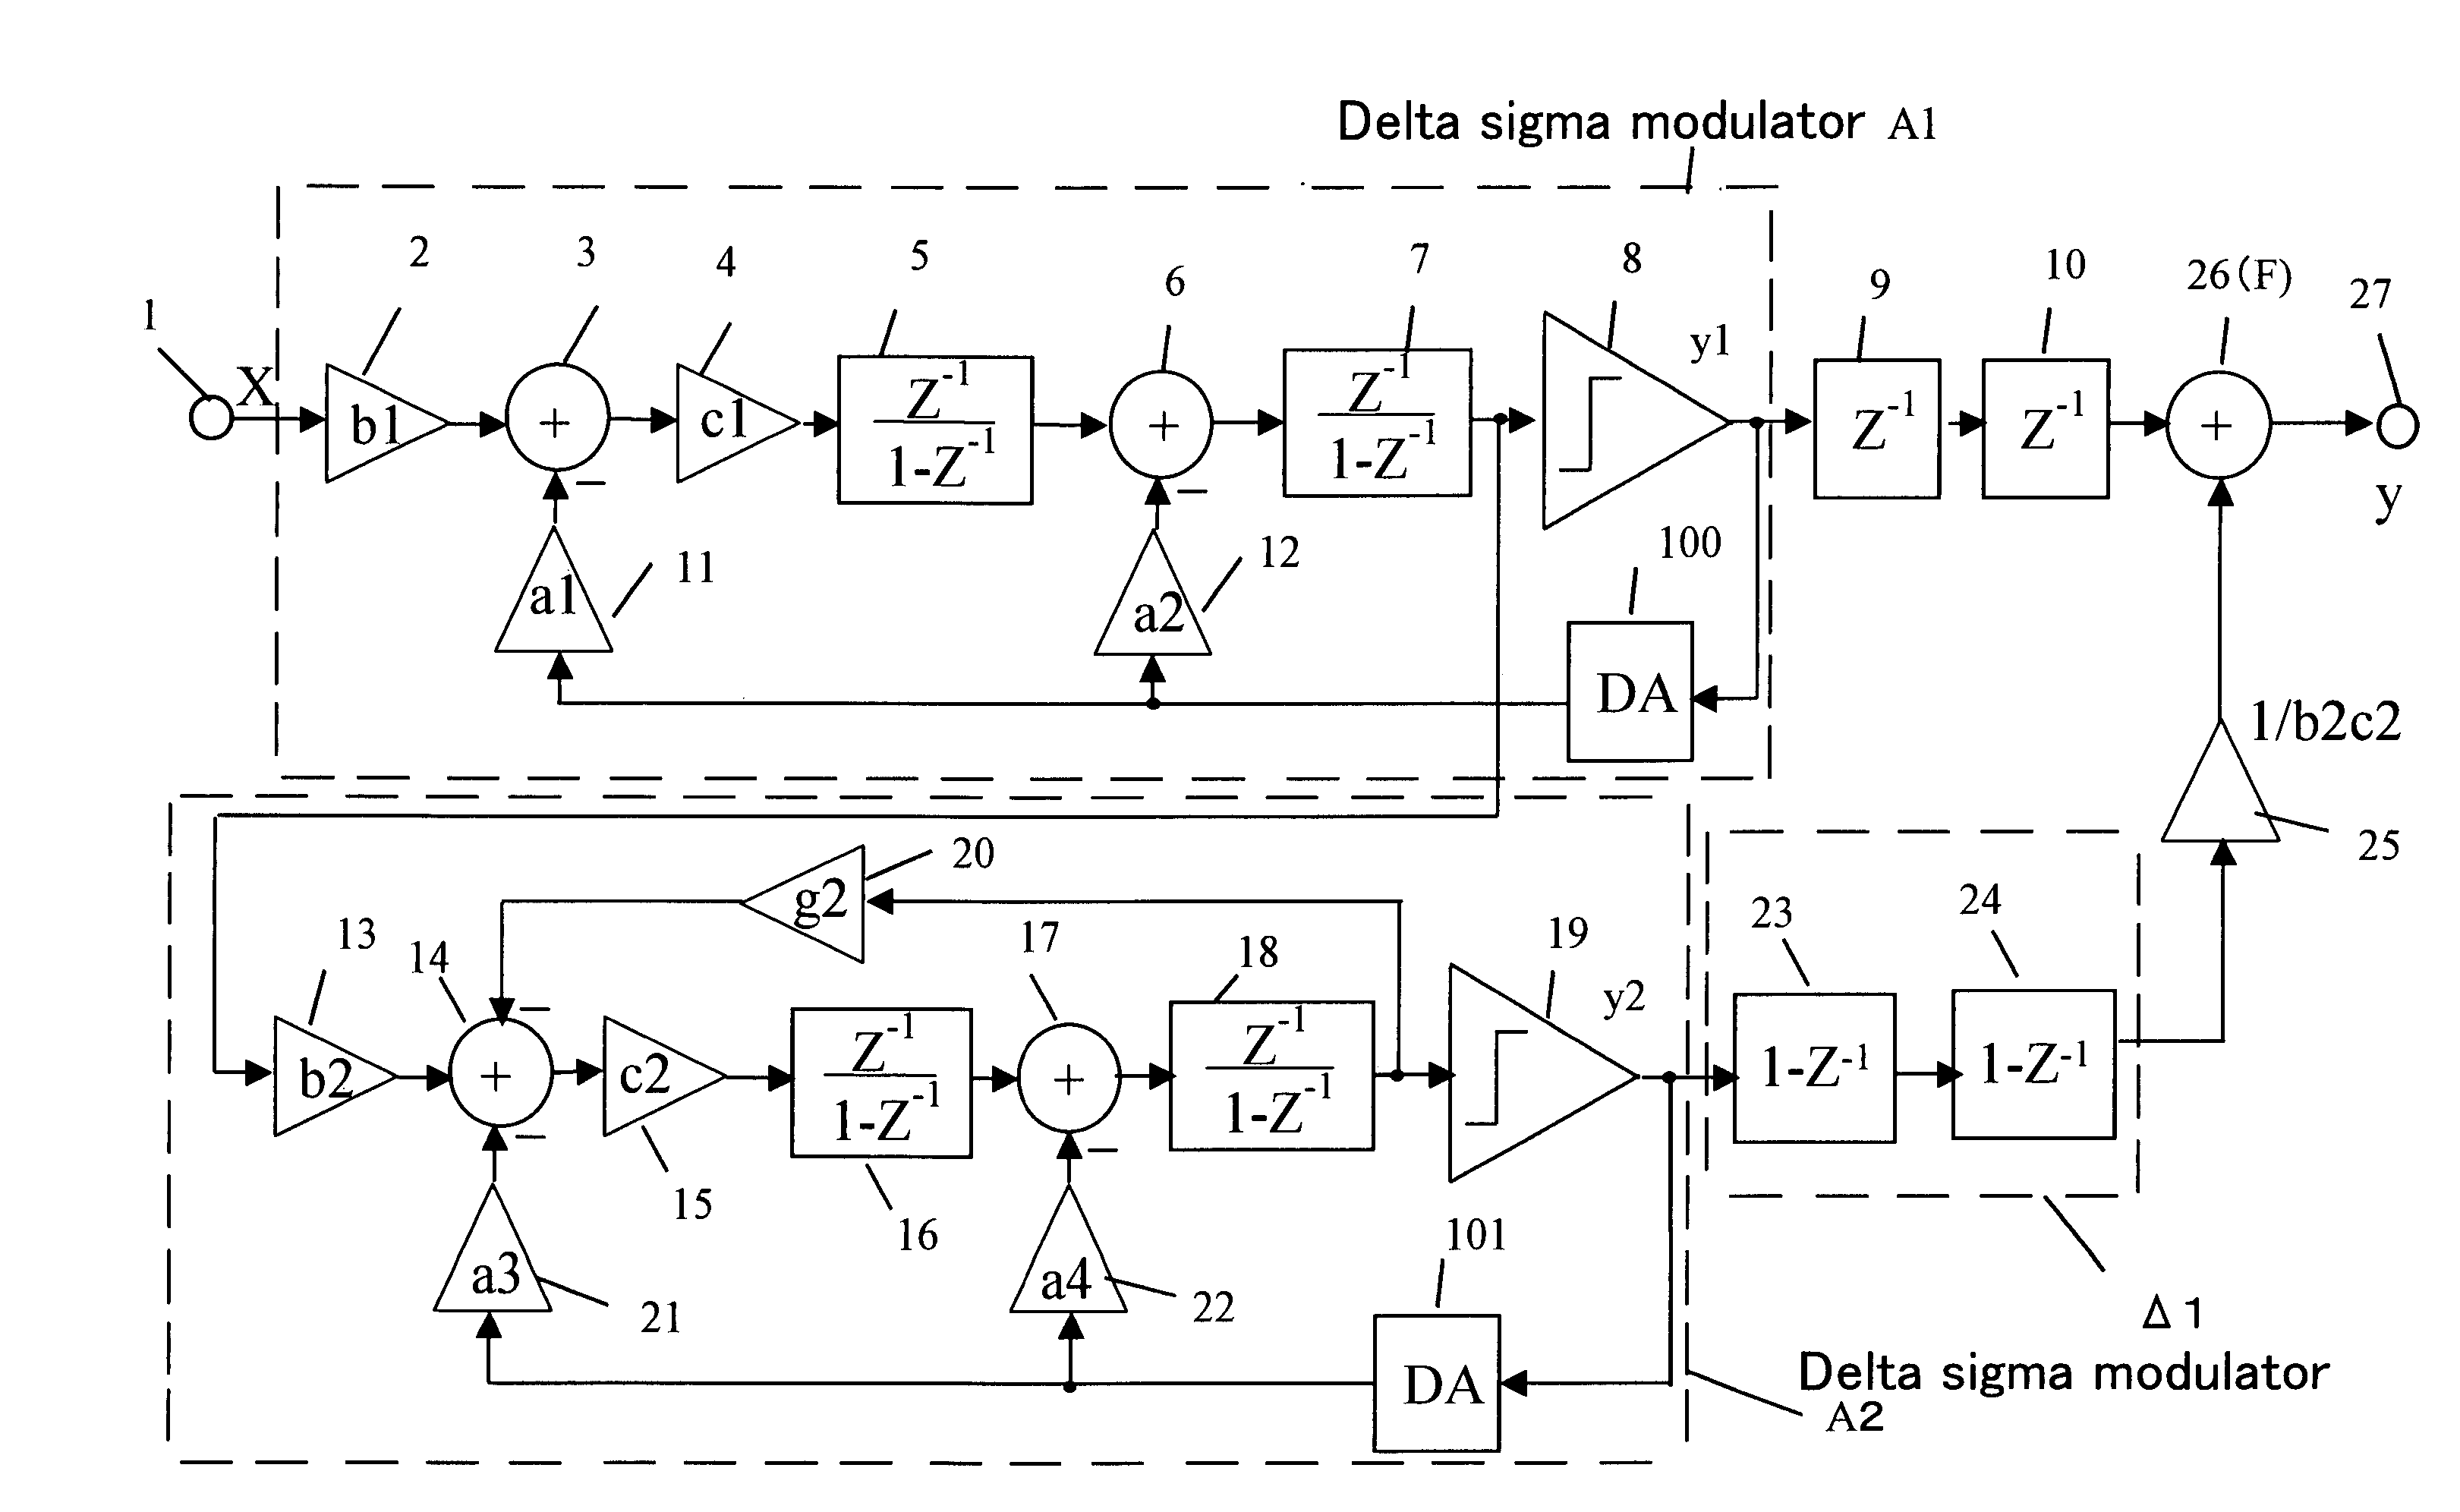 Delta sigma modulating apparatus